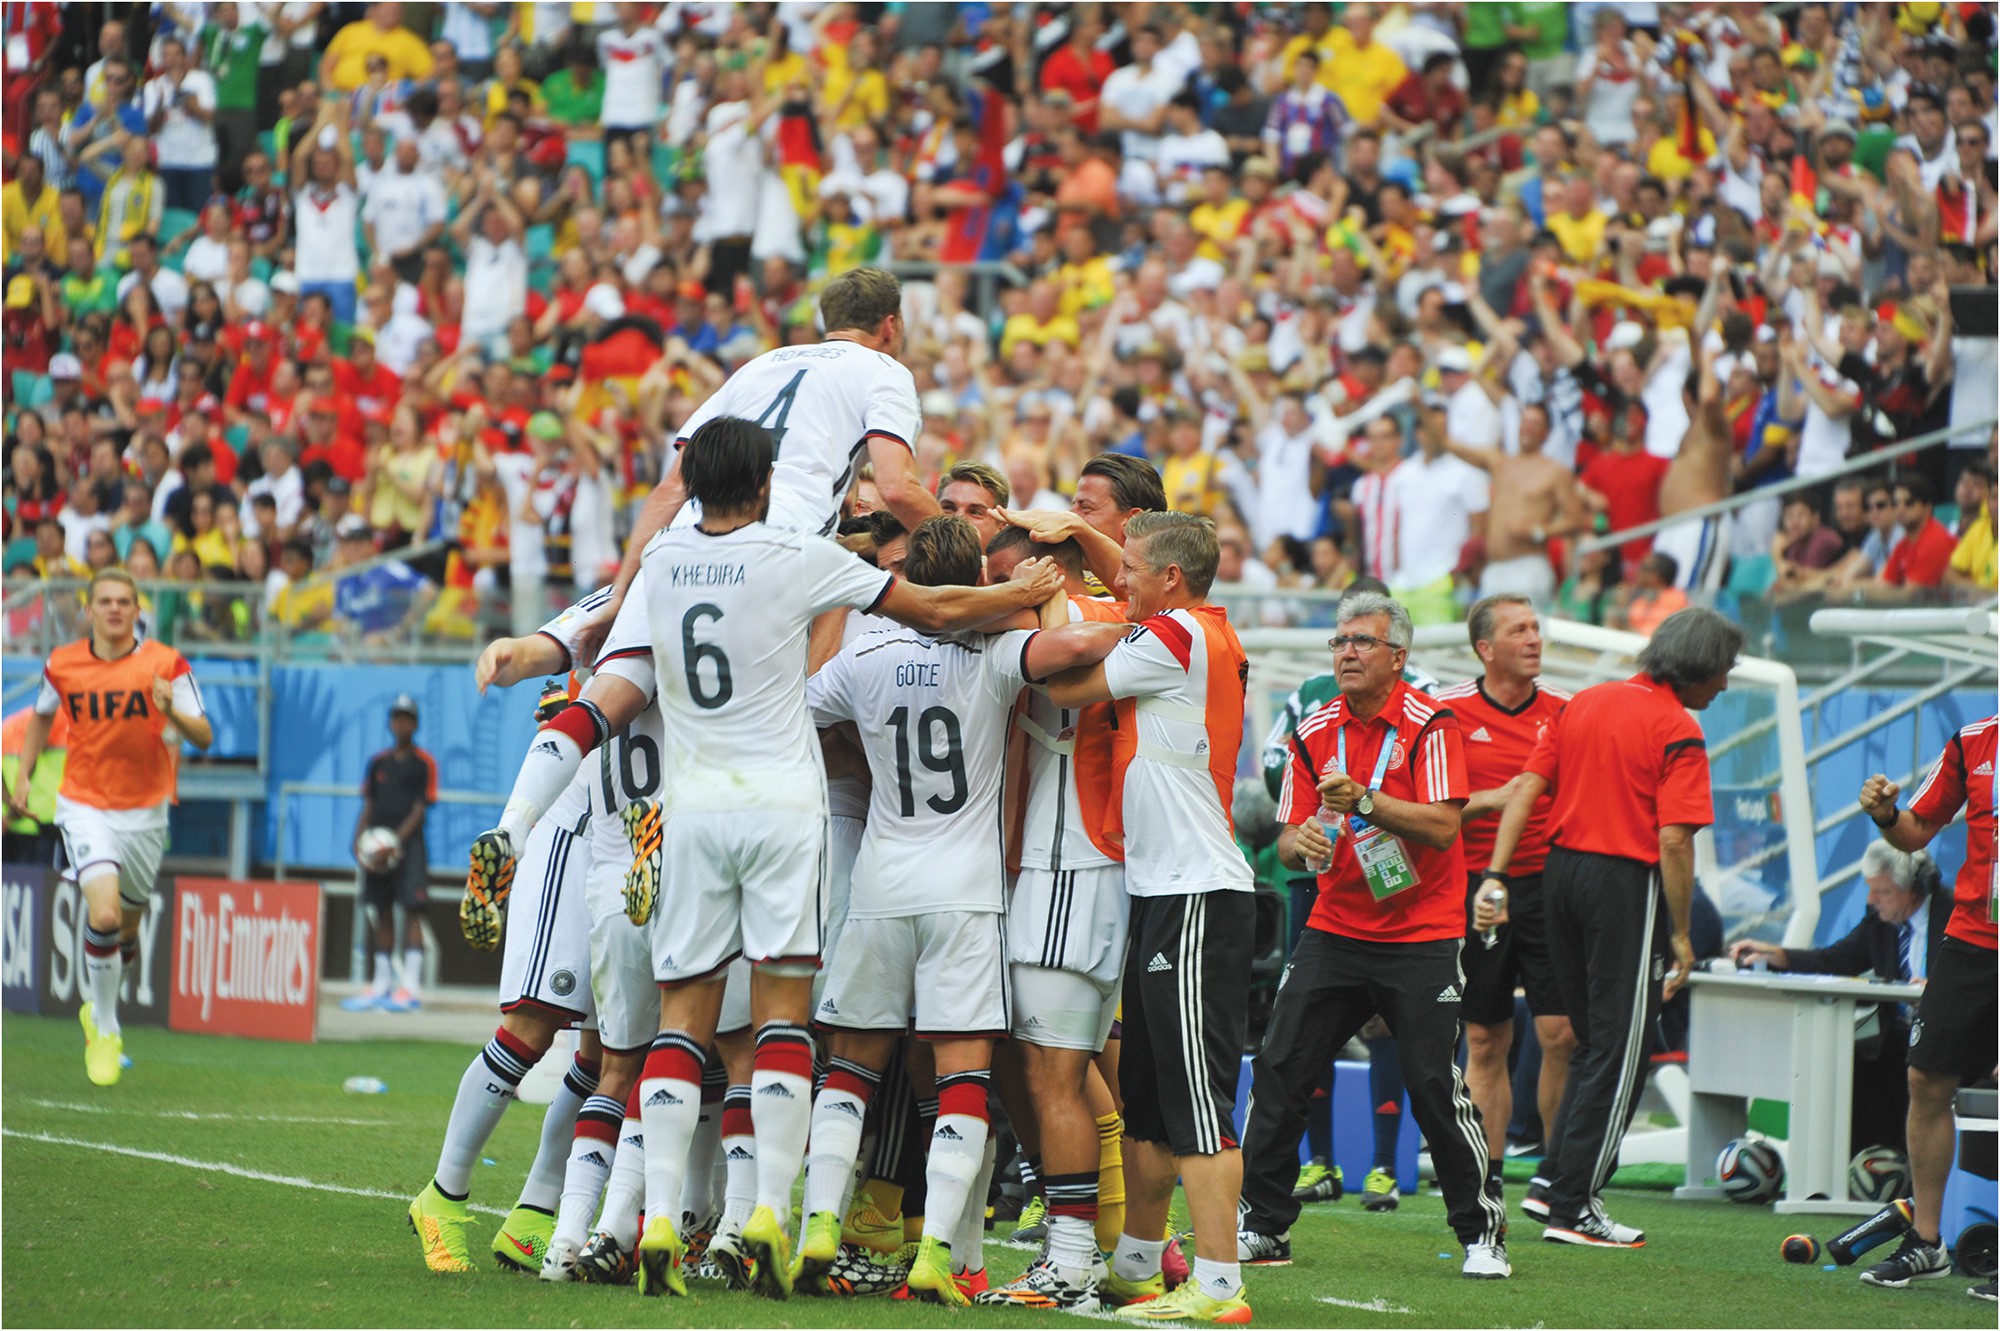 Vũ khí bí mật giúp Đức lên ngôi tại World Cup 2014 - Ảnh 2.